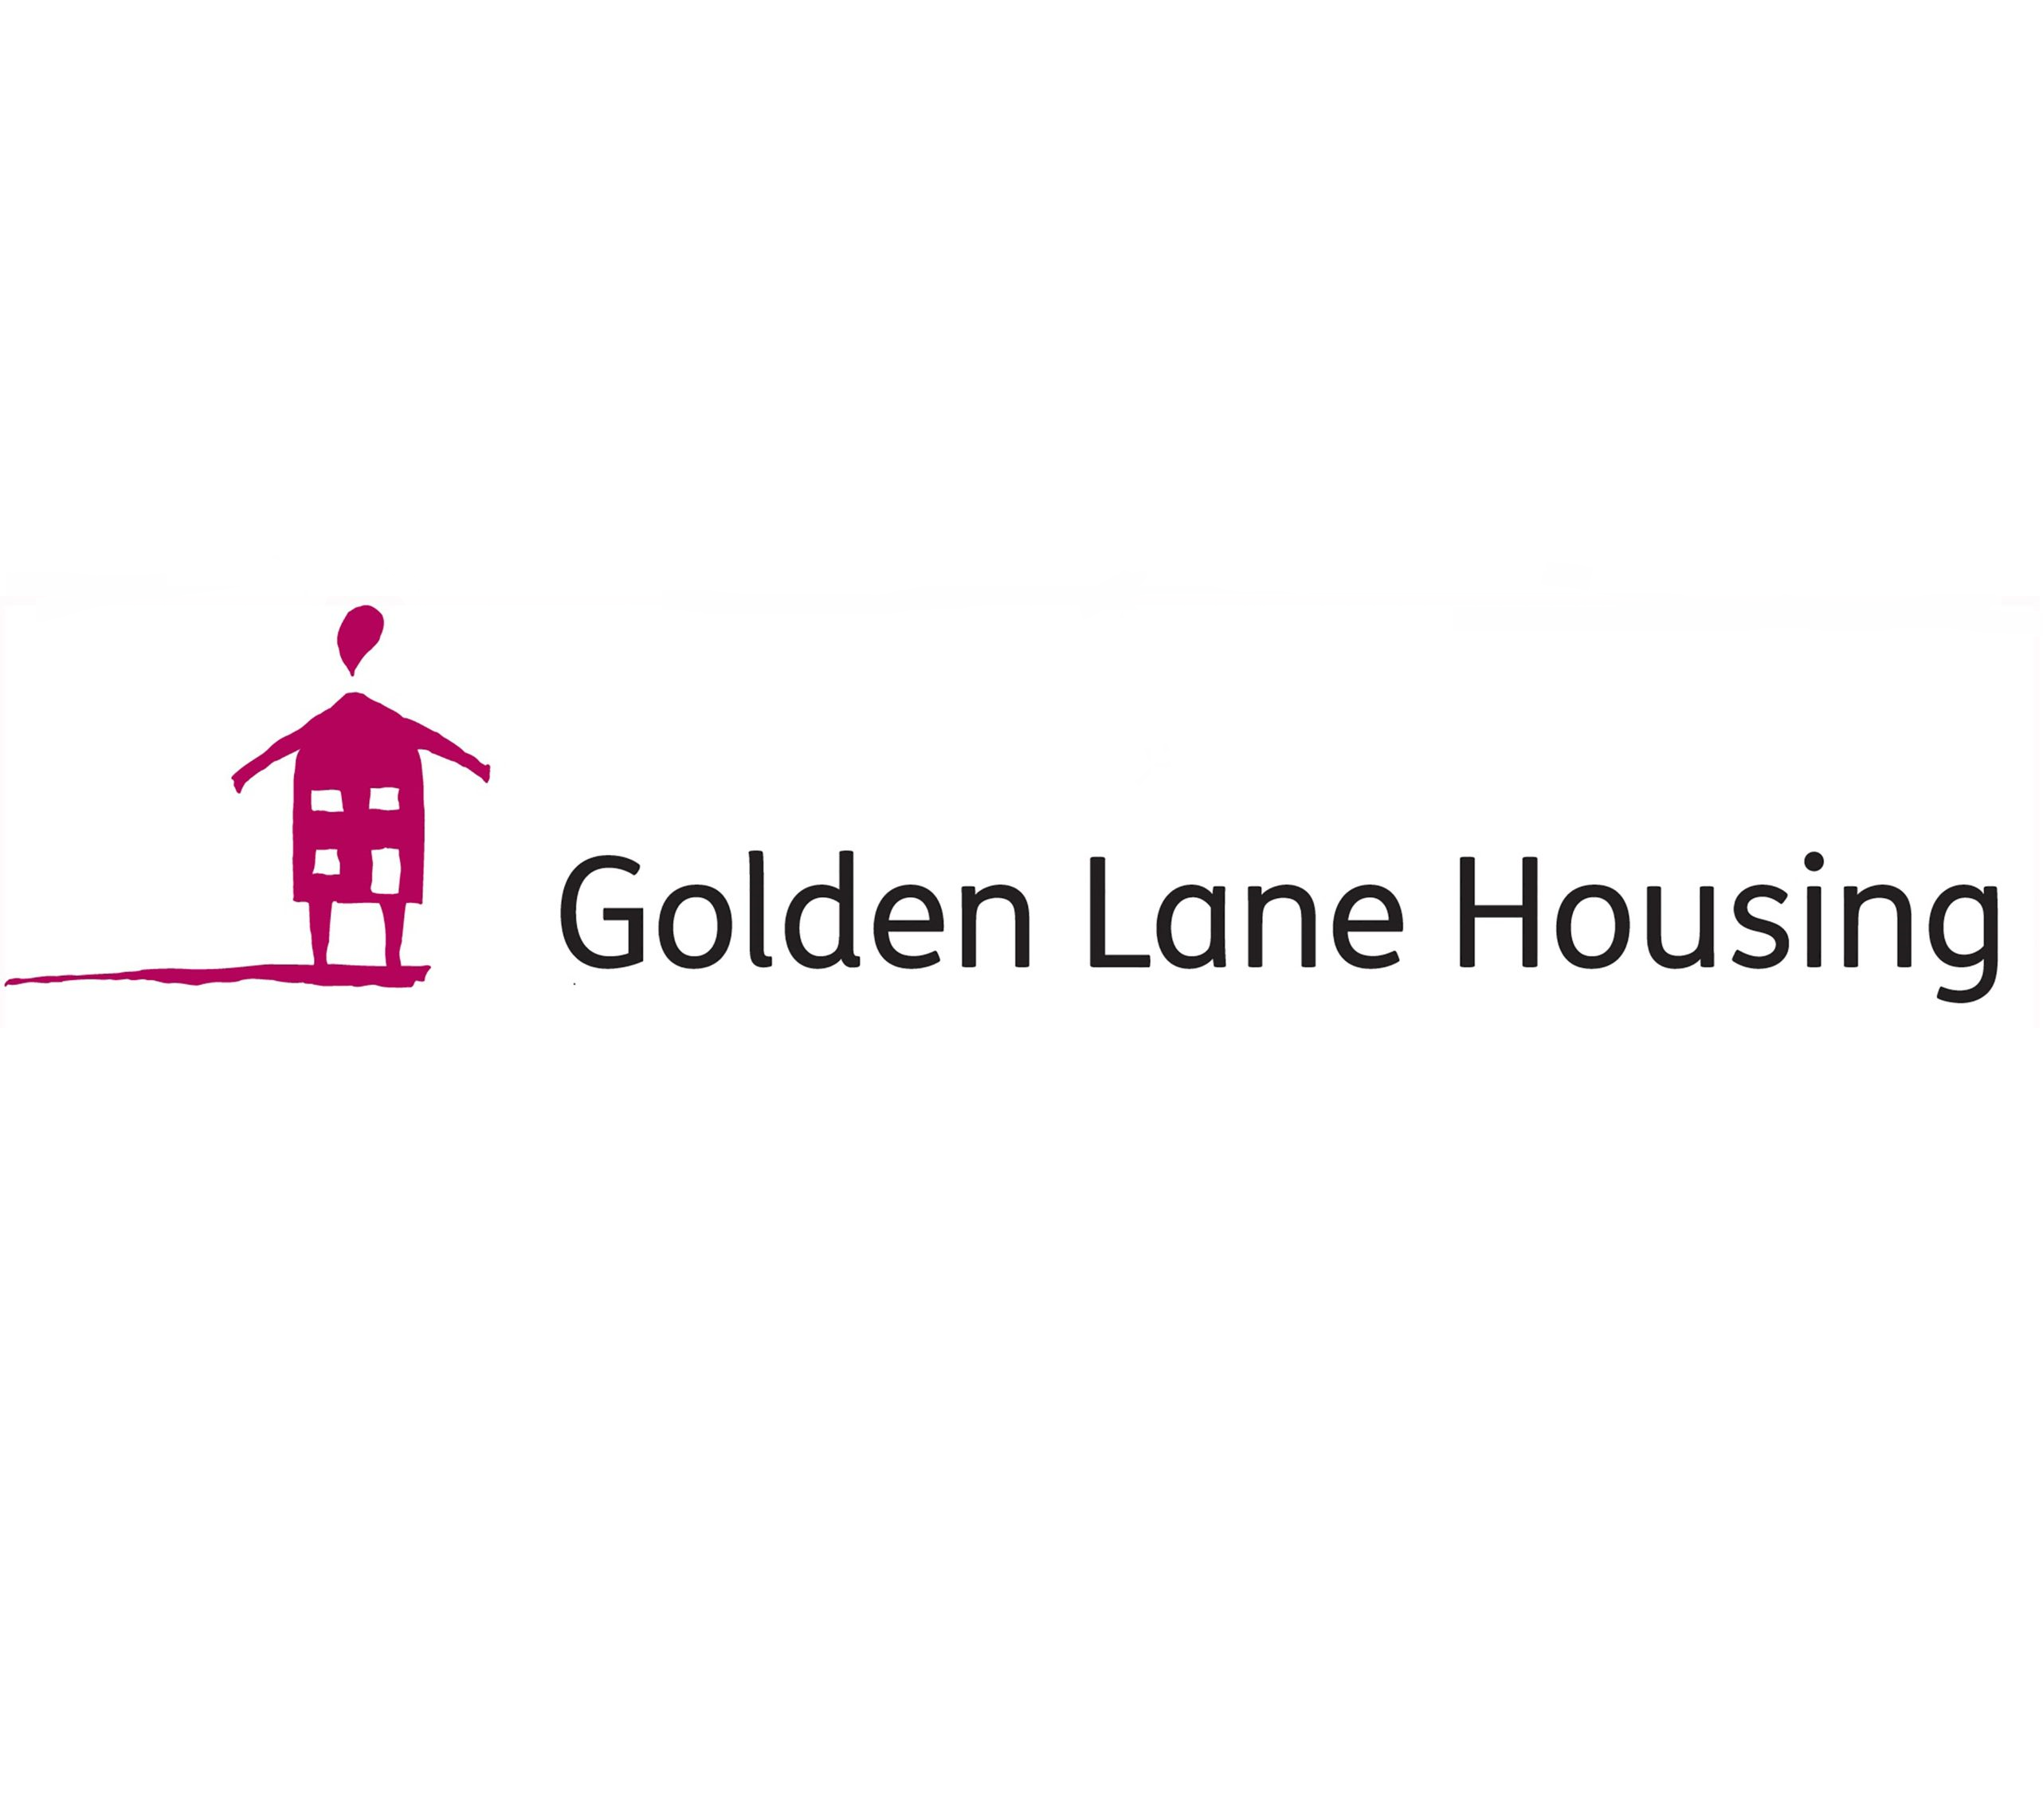 Golden lane housing's logo